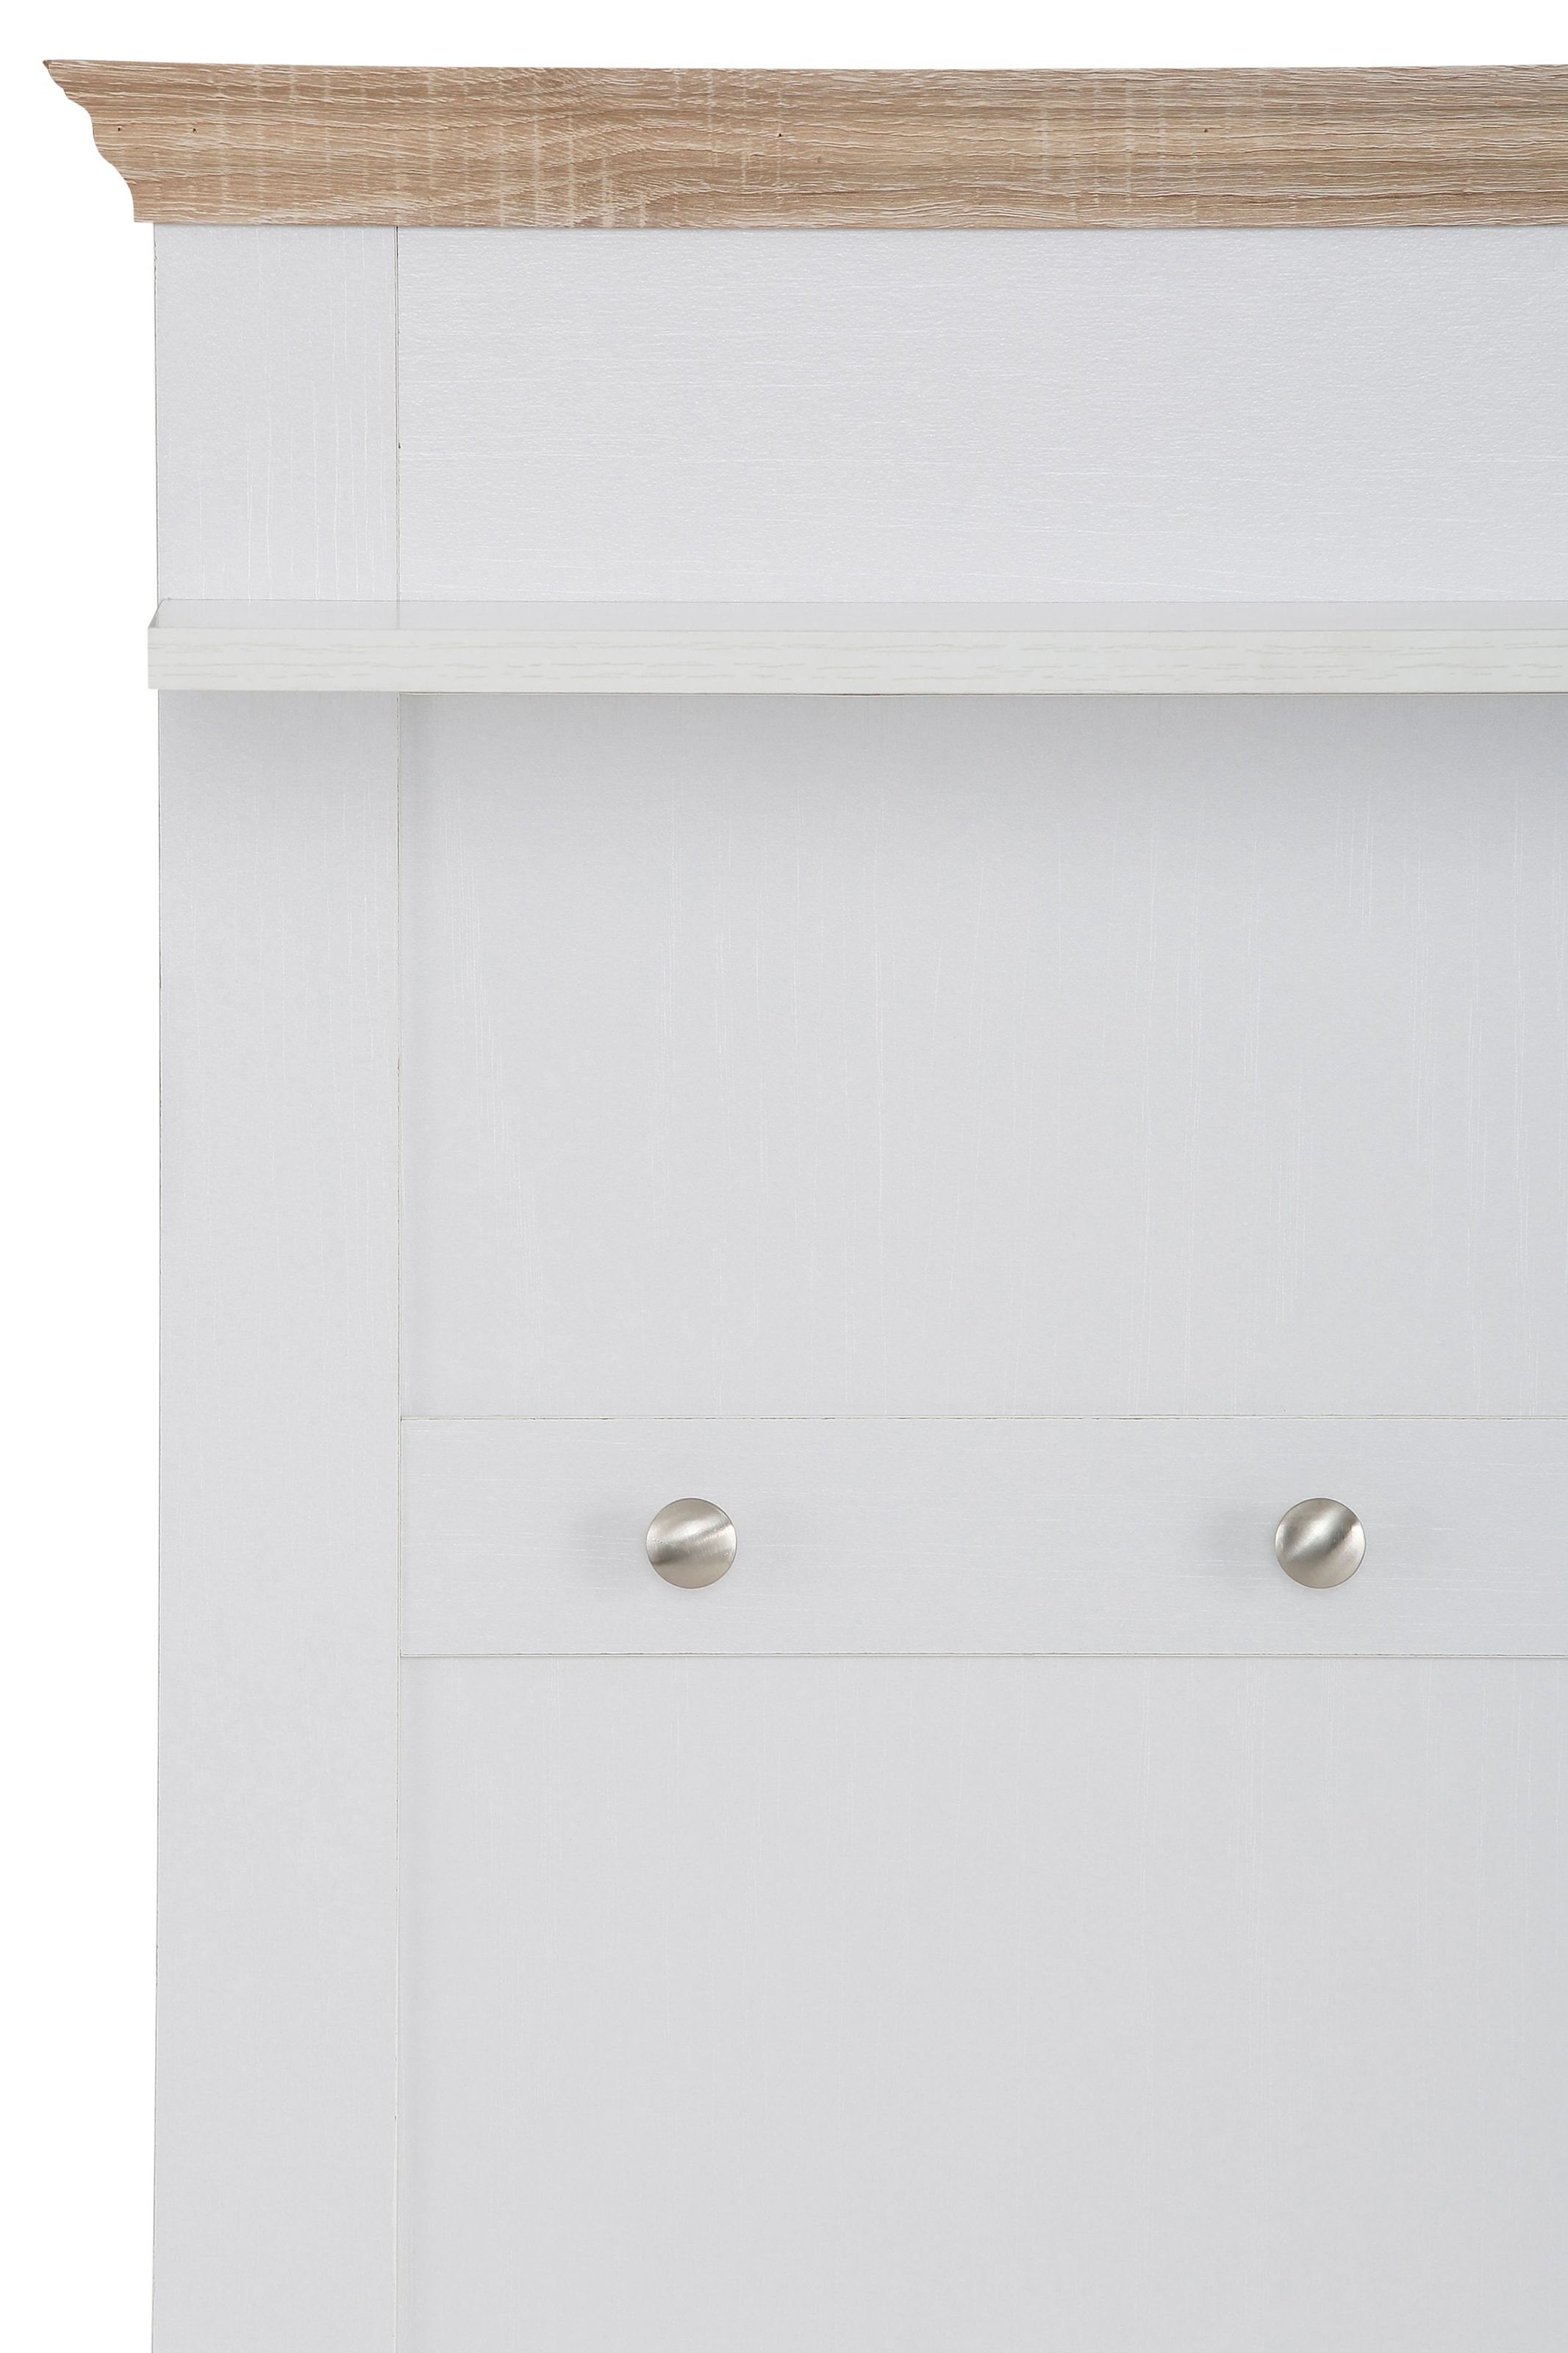 Home affaire Garderobenpaneel »Binz«, aus einer schönen Holzoptik, mit vier Haken und einer Ablagefläche